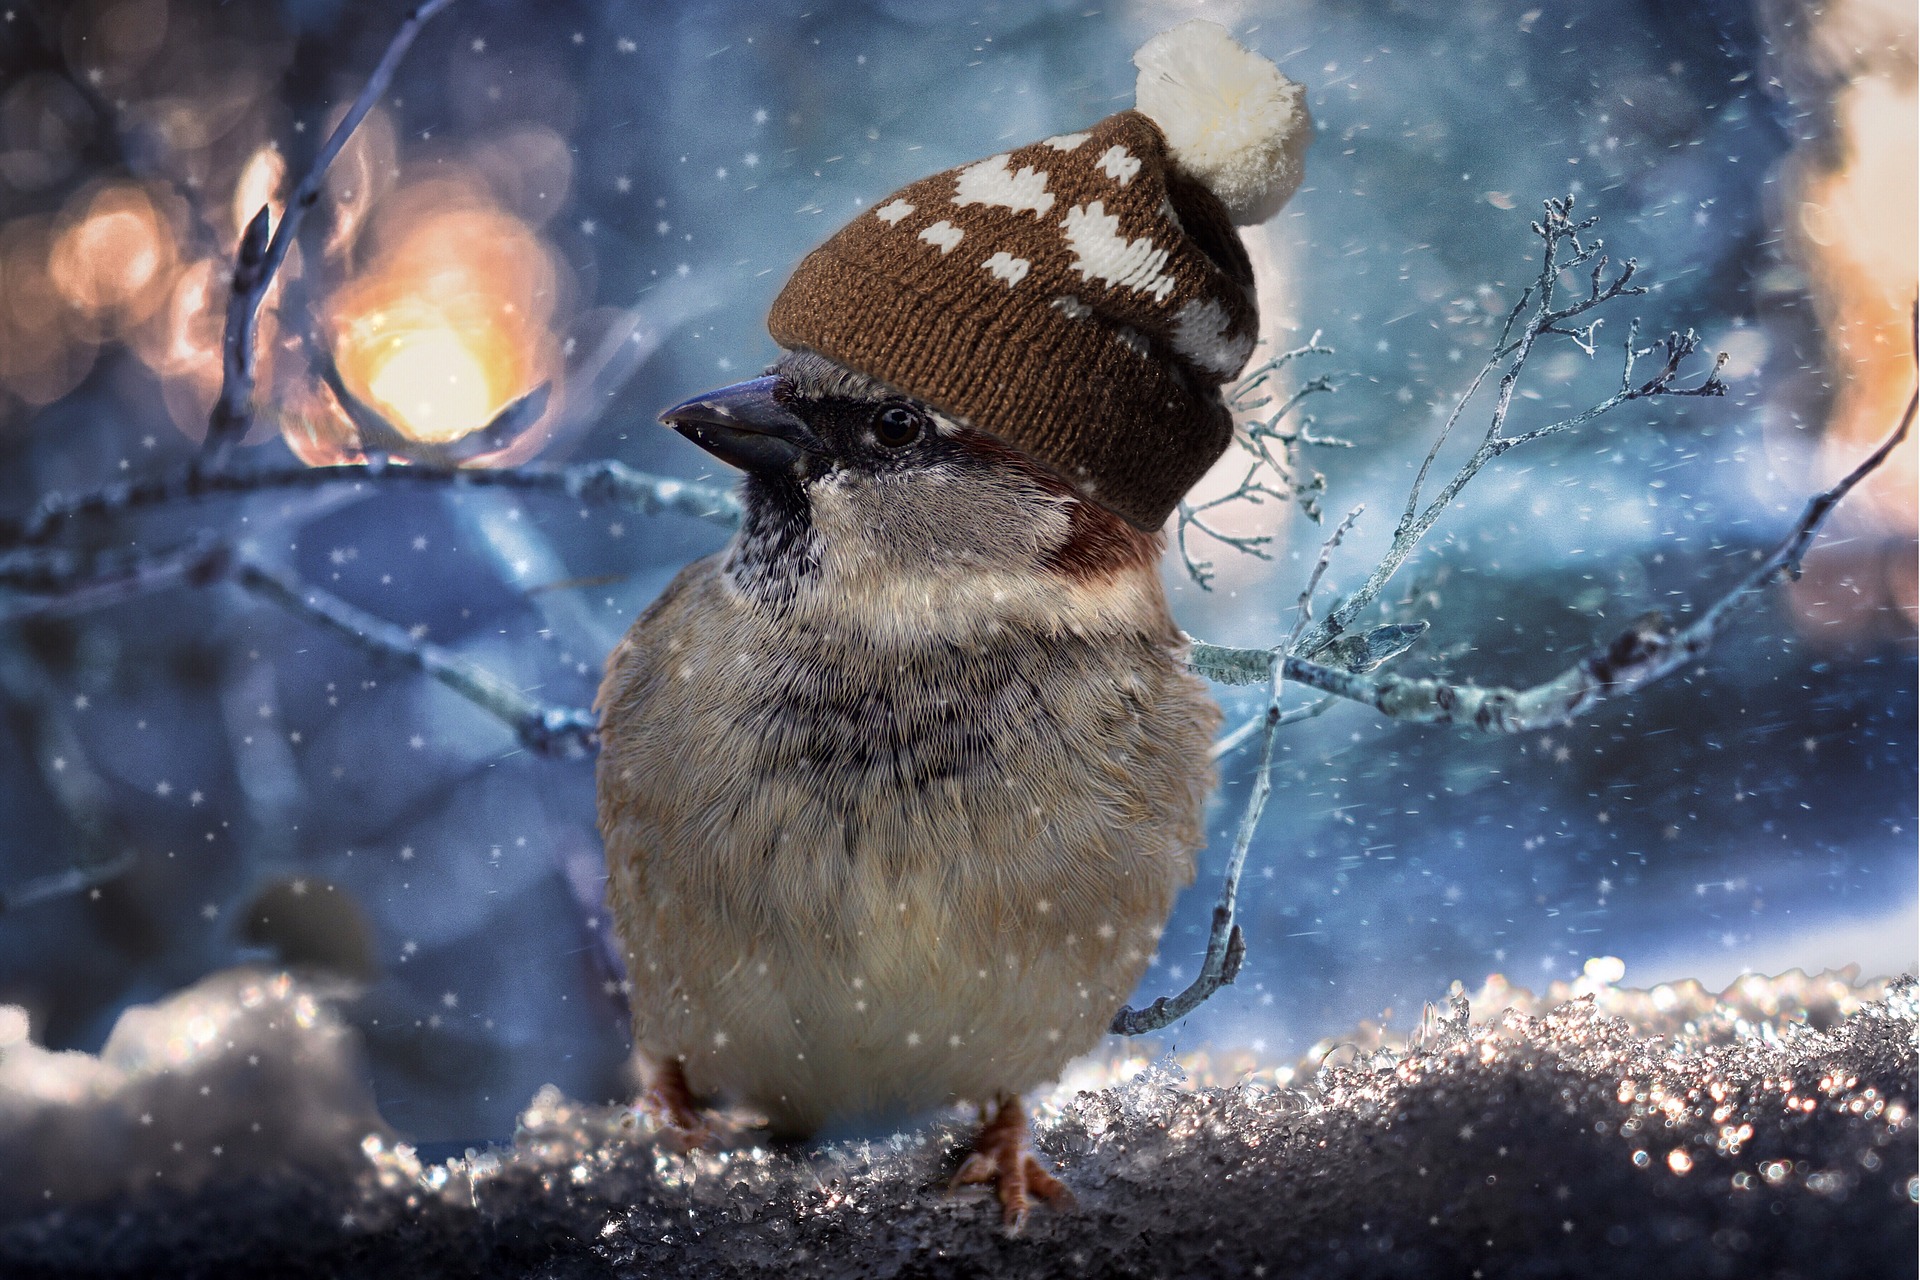 sparrow - how do birds keep warm?